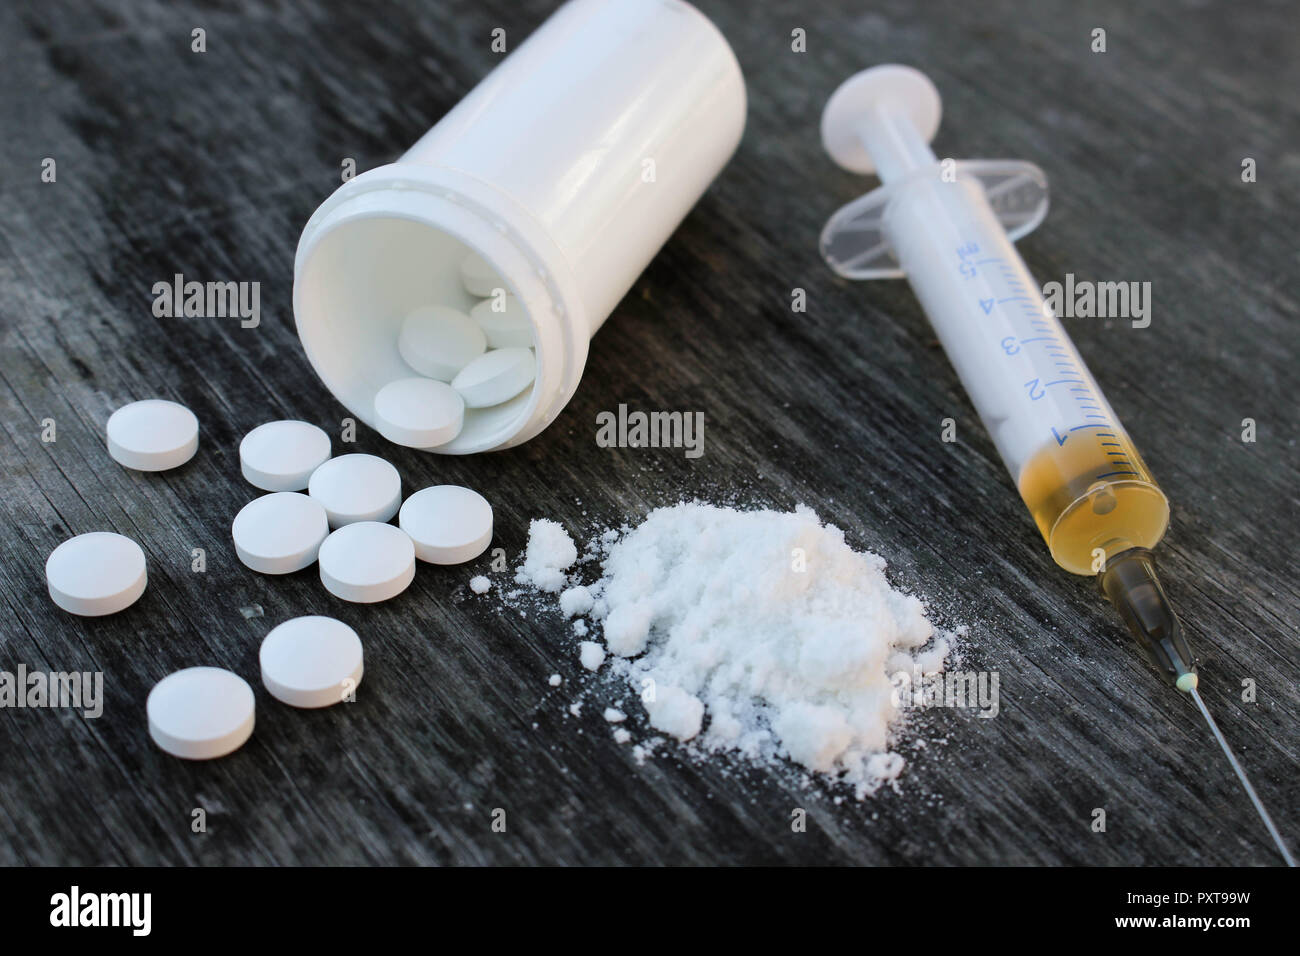 La toxicomanie sur le vieux fond de bois. Comprimé blanc, la seringue et l'héroïne. Banque D'Images